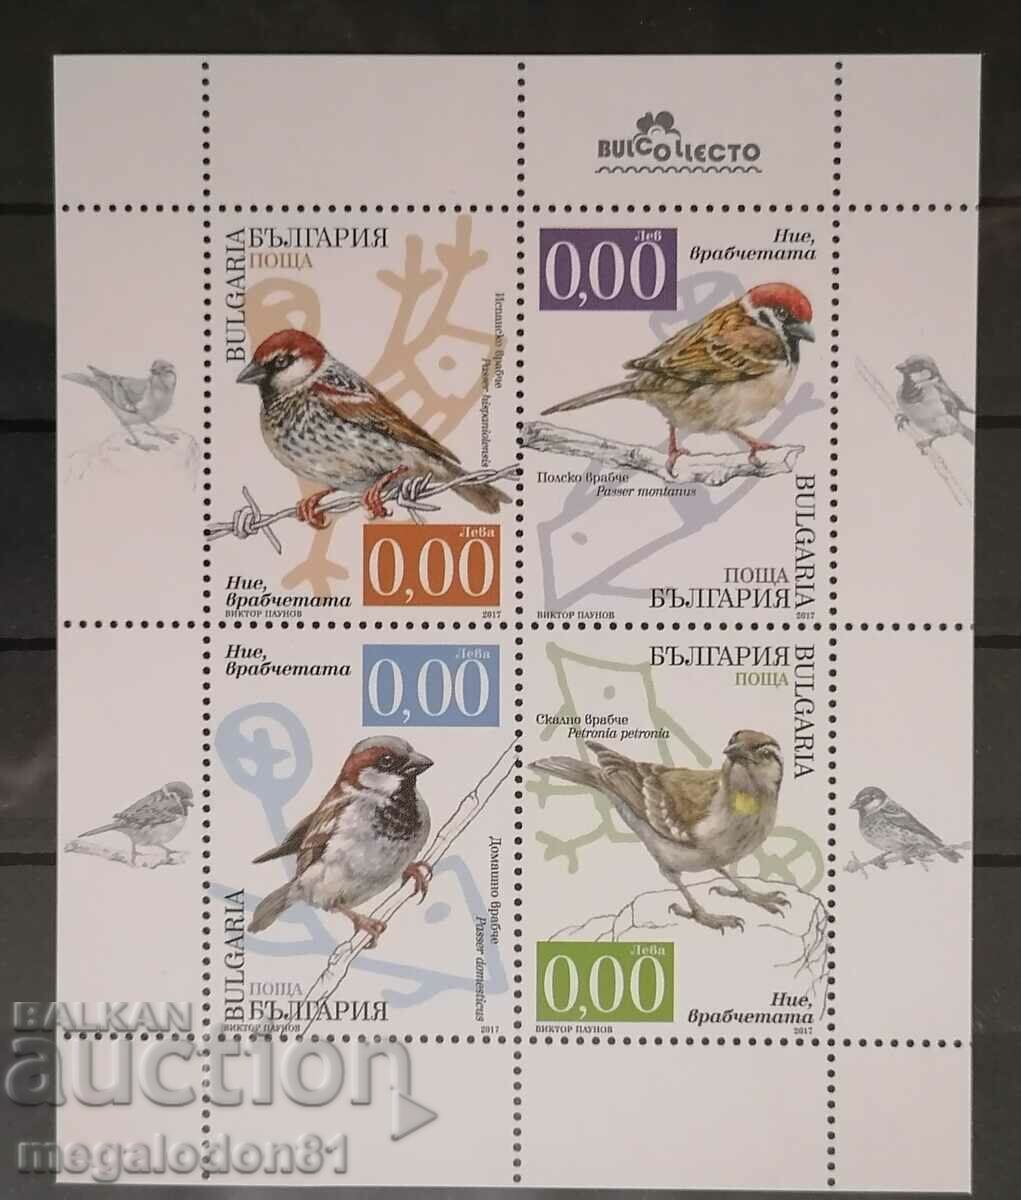 Bulgaria - sparrows, souvenir block, 2017